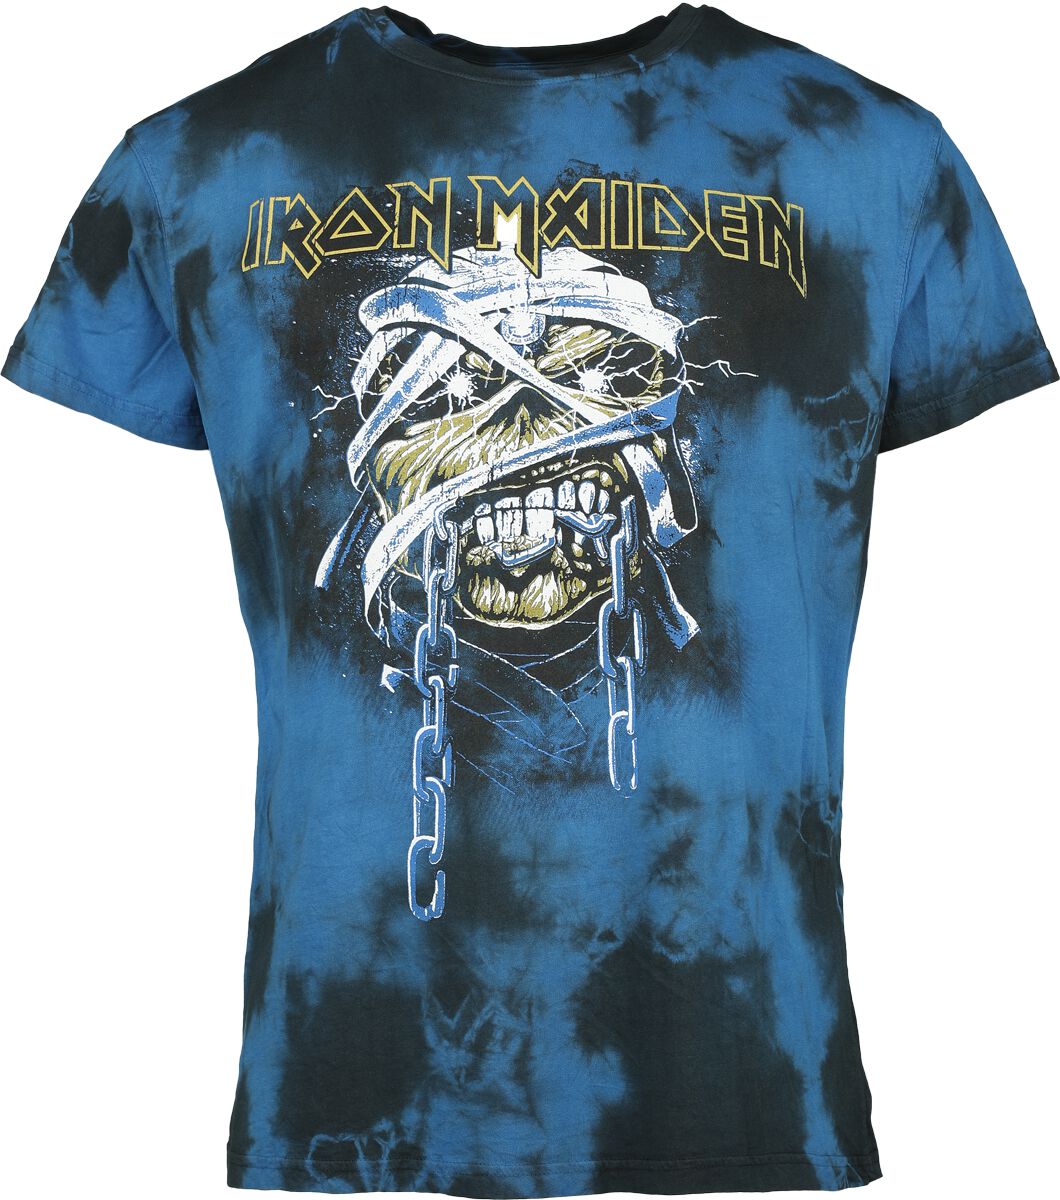 Iron Maiden T-Shirt - Powerslave - Mummy Head - S bis XXL - für Männer - Größe M - schwarz/blau  - Lizenziertes Merchandise!